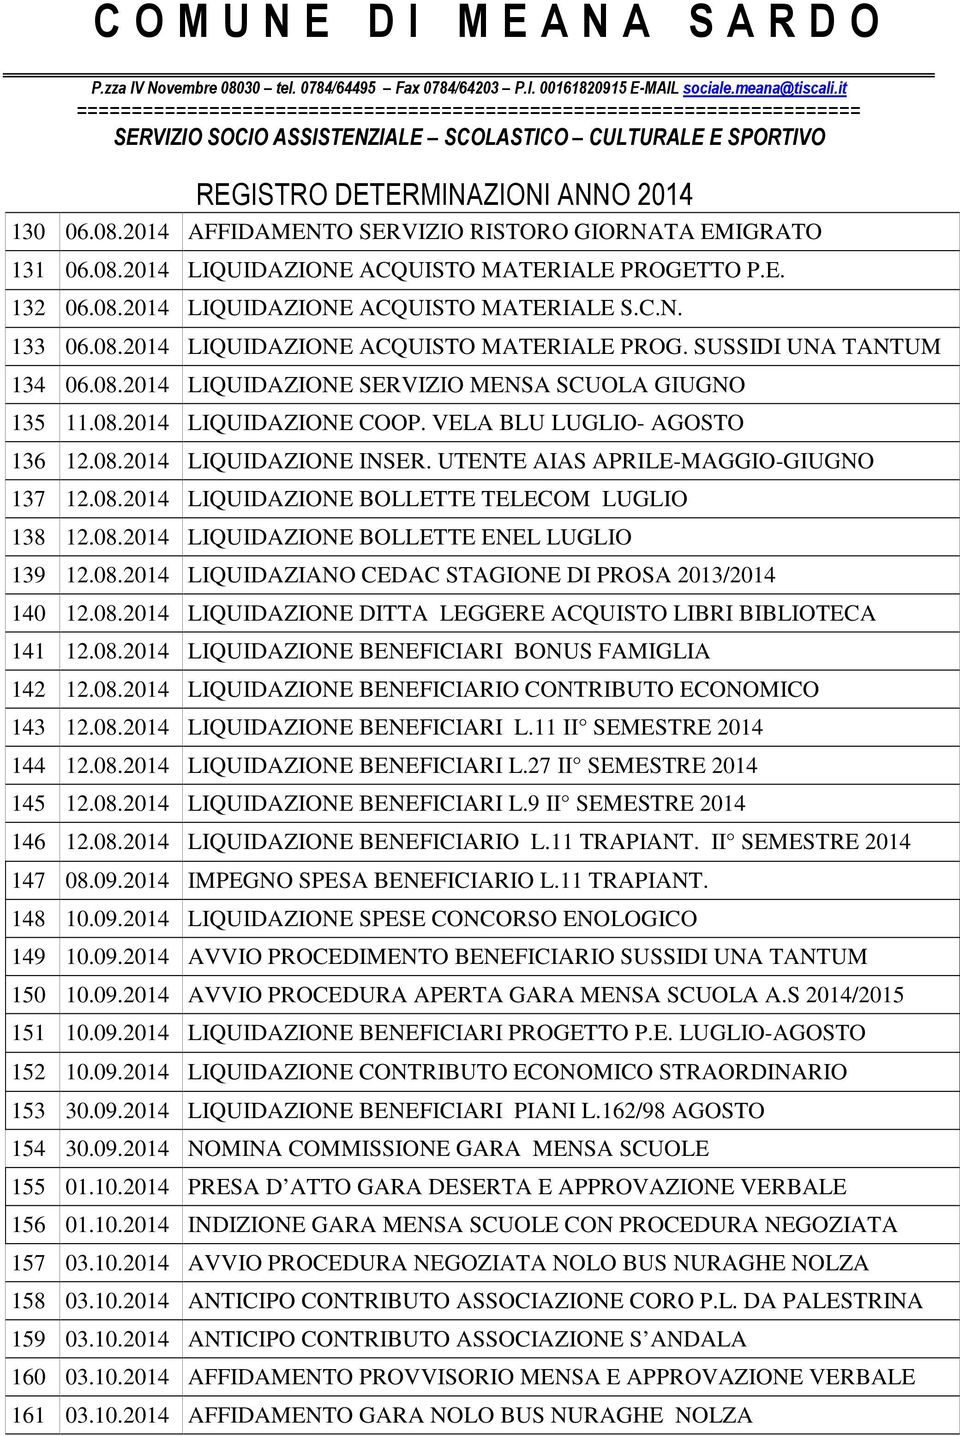 08.2014 LIQUIDAZIONE BOLLETTE ENEL LUGLIO 139 12.08.2014 LIQUIDAZIANO CEDAC STAGIONE DI PROSA 2013/2014 140 12.08.2014 LIQUIDAZIONE DITTA LEGGERE ACQUISTO LIBRI BIBLIOTECA 141 12.08.2014 LIQUIDAZIONE BENEFICIARI BONUS FAMIGLIA 142 12.